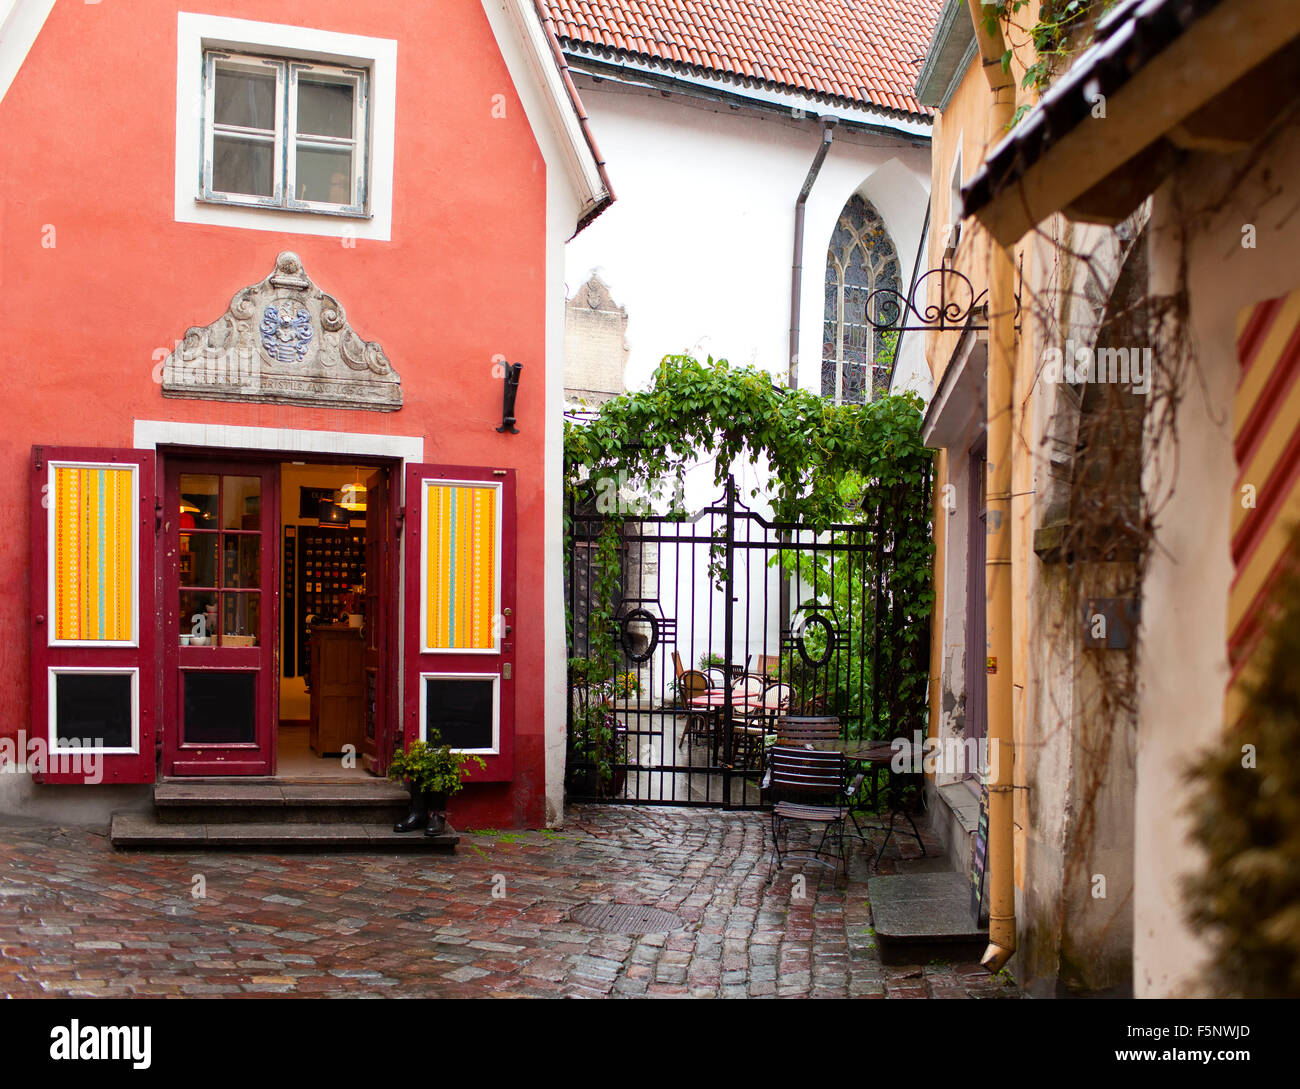 La casa más pequeña, la casa del sacerdote, en el casco antiguo de la ciudad medieval. Tallinn. Estonia. Foto de stock